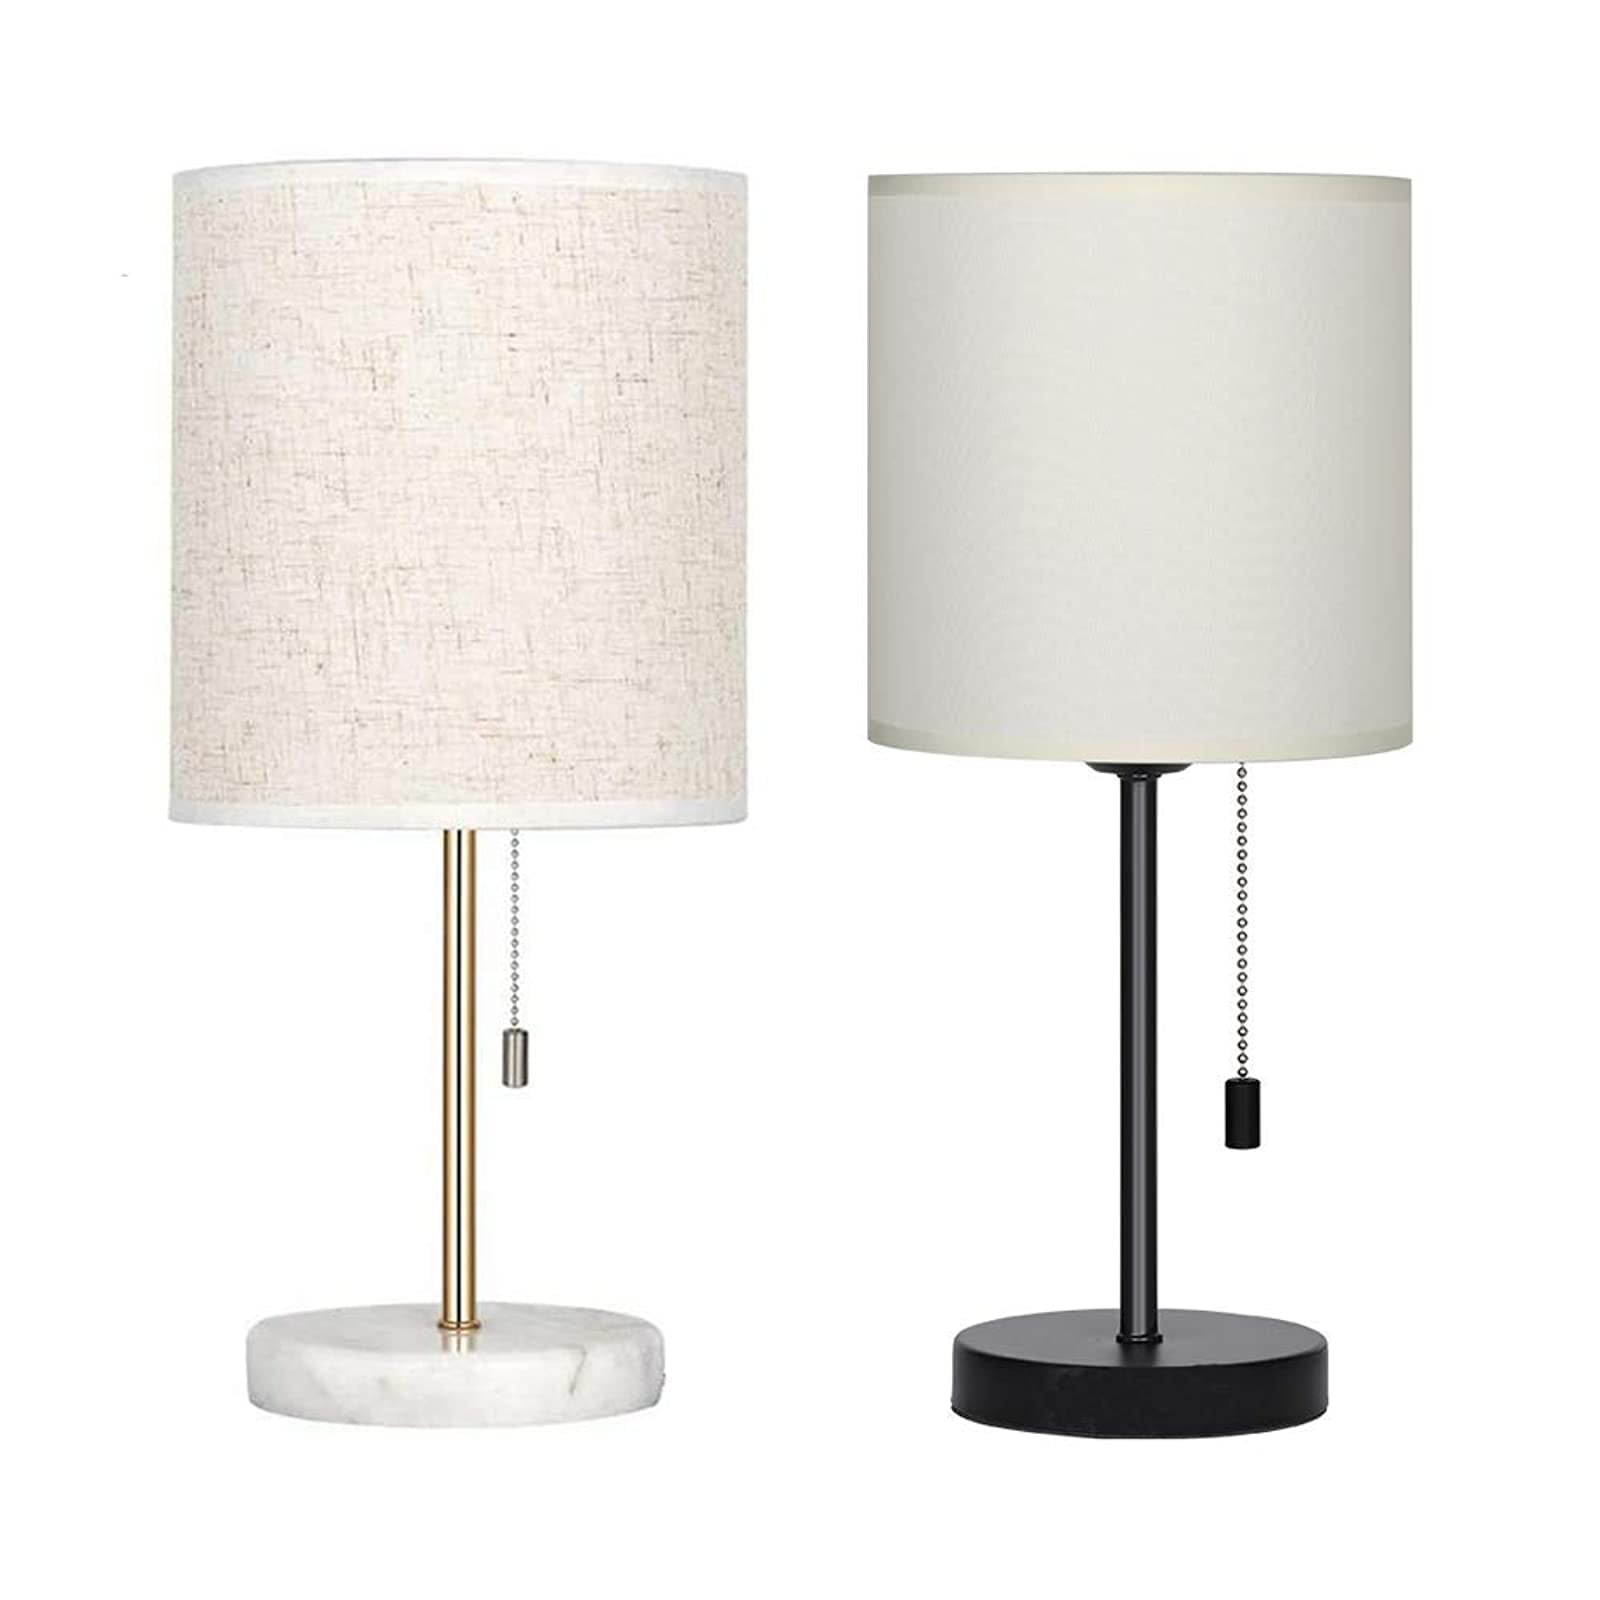 HAITRAL Table Lamp-Bedside Desk Lamp for Bedroom College Dorm Bundled Goods Without Bulb Office 